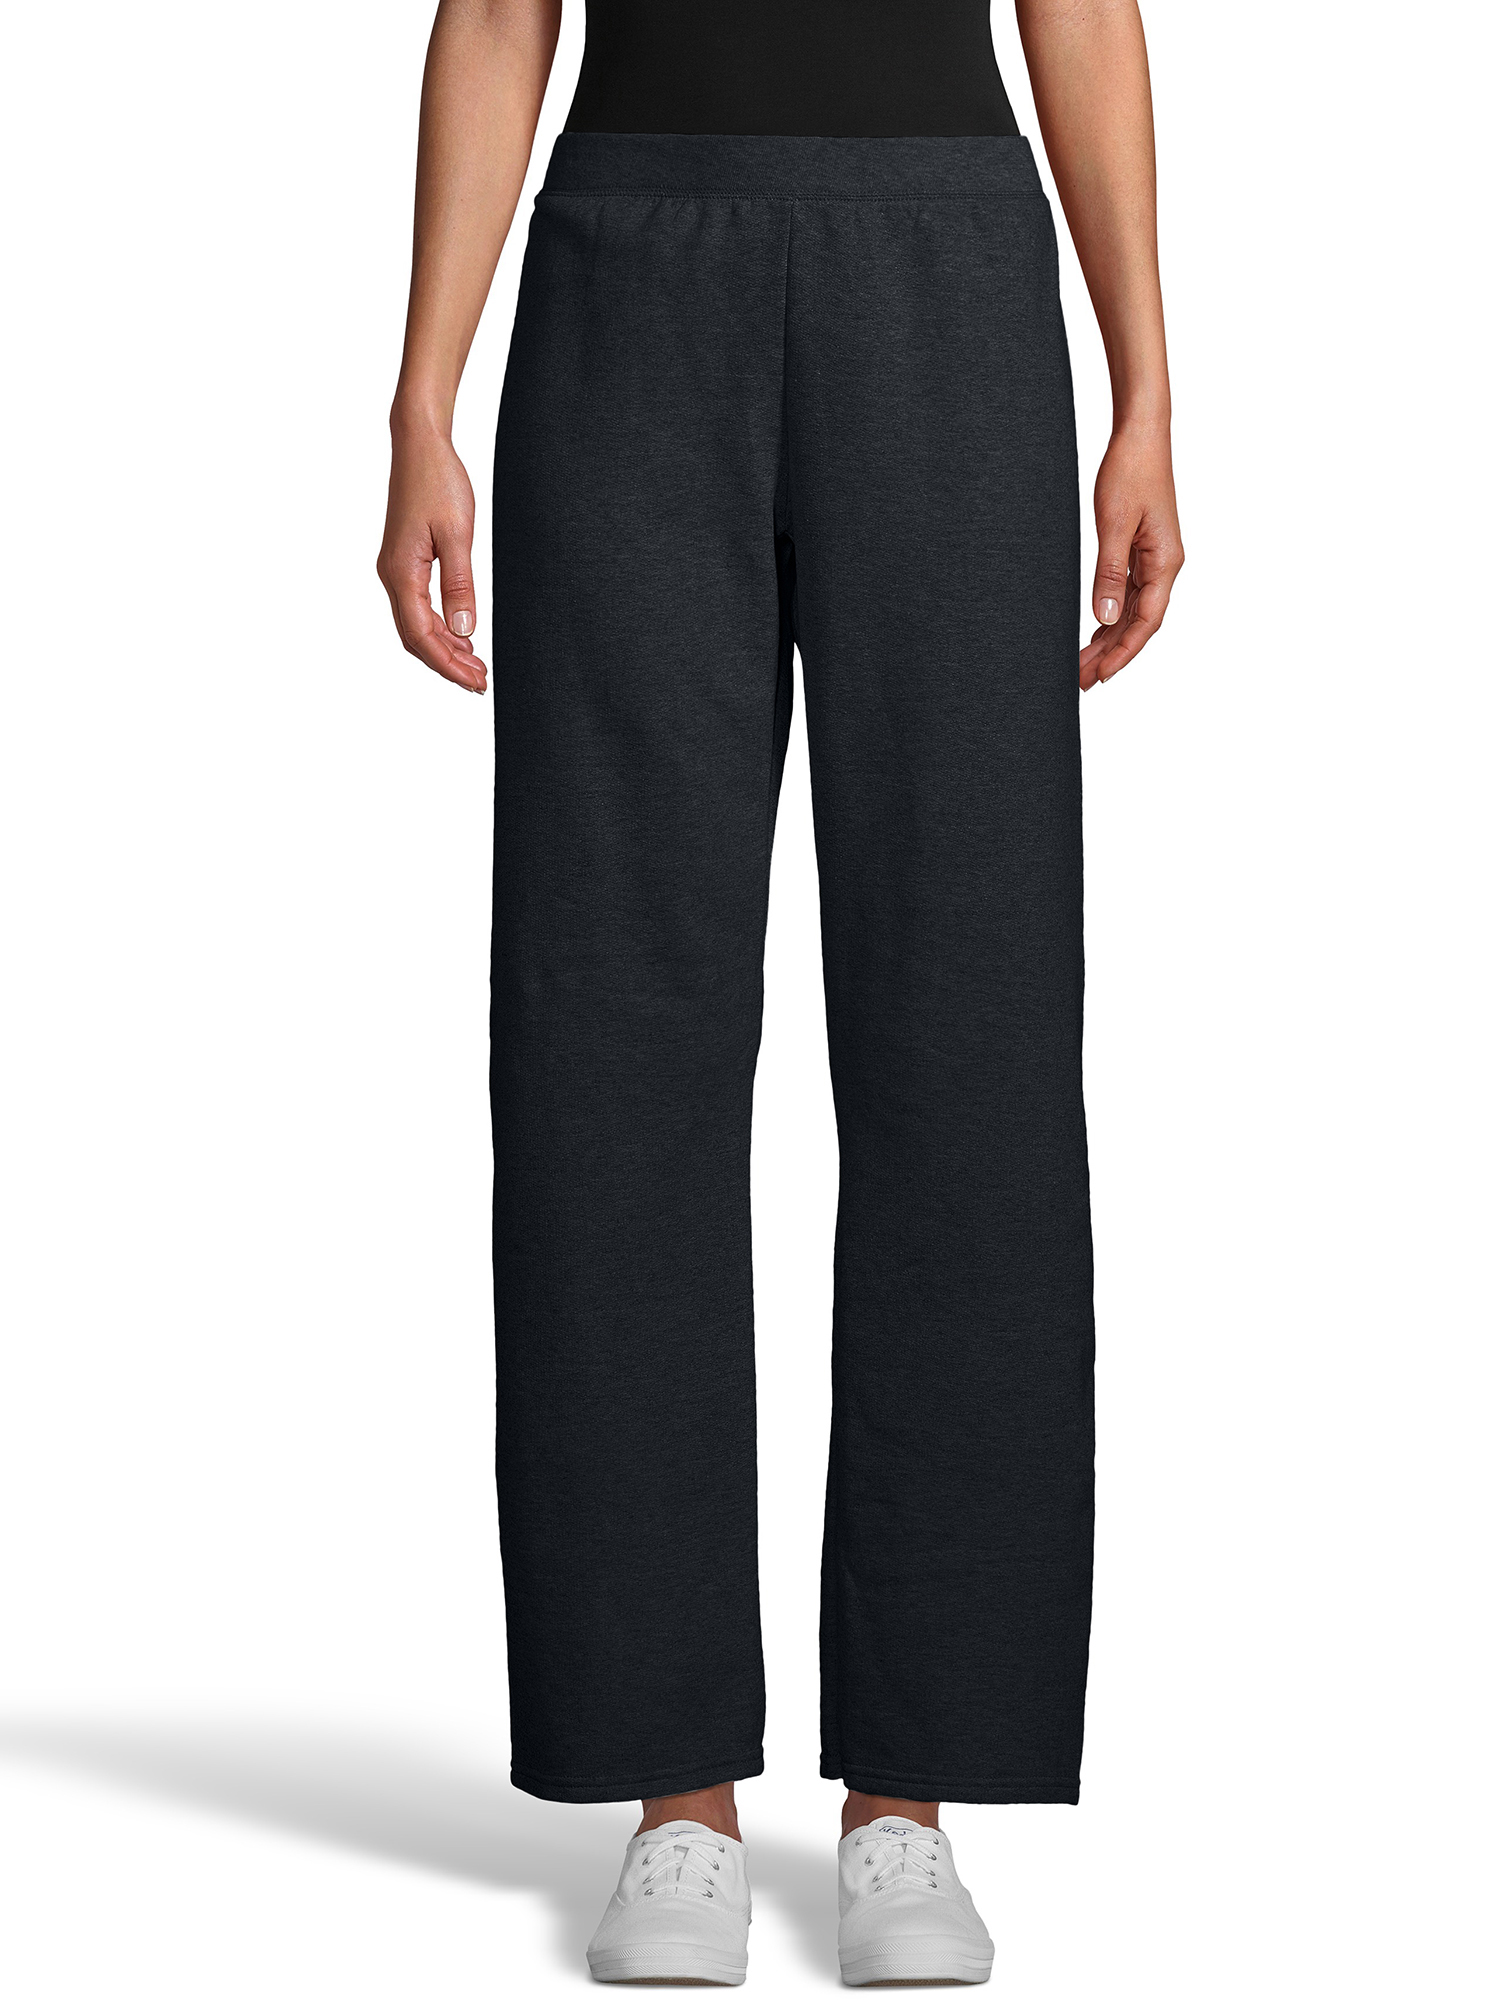 Hanes ComfortSoft EcoSmart Women's Open Bottom Fleece Sweatpants, Sizes S-XXL and Petite - image 3 of 5